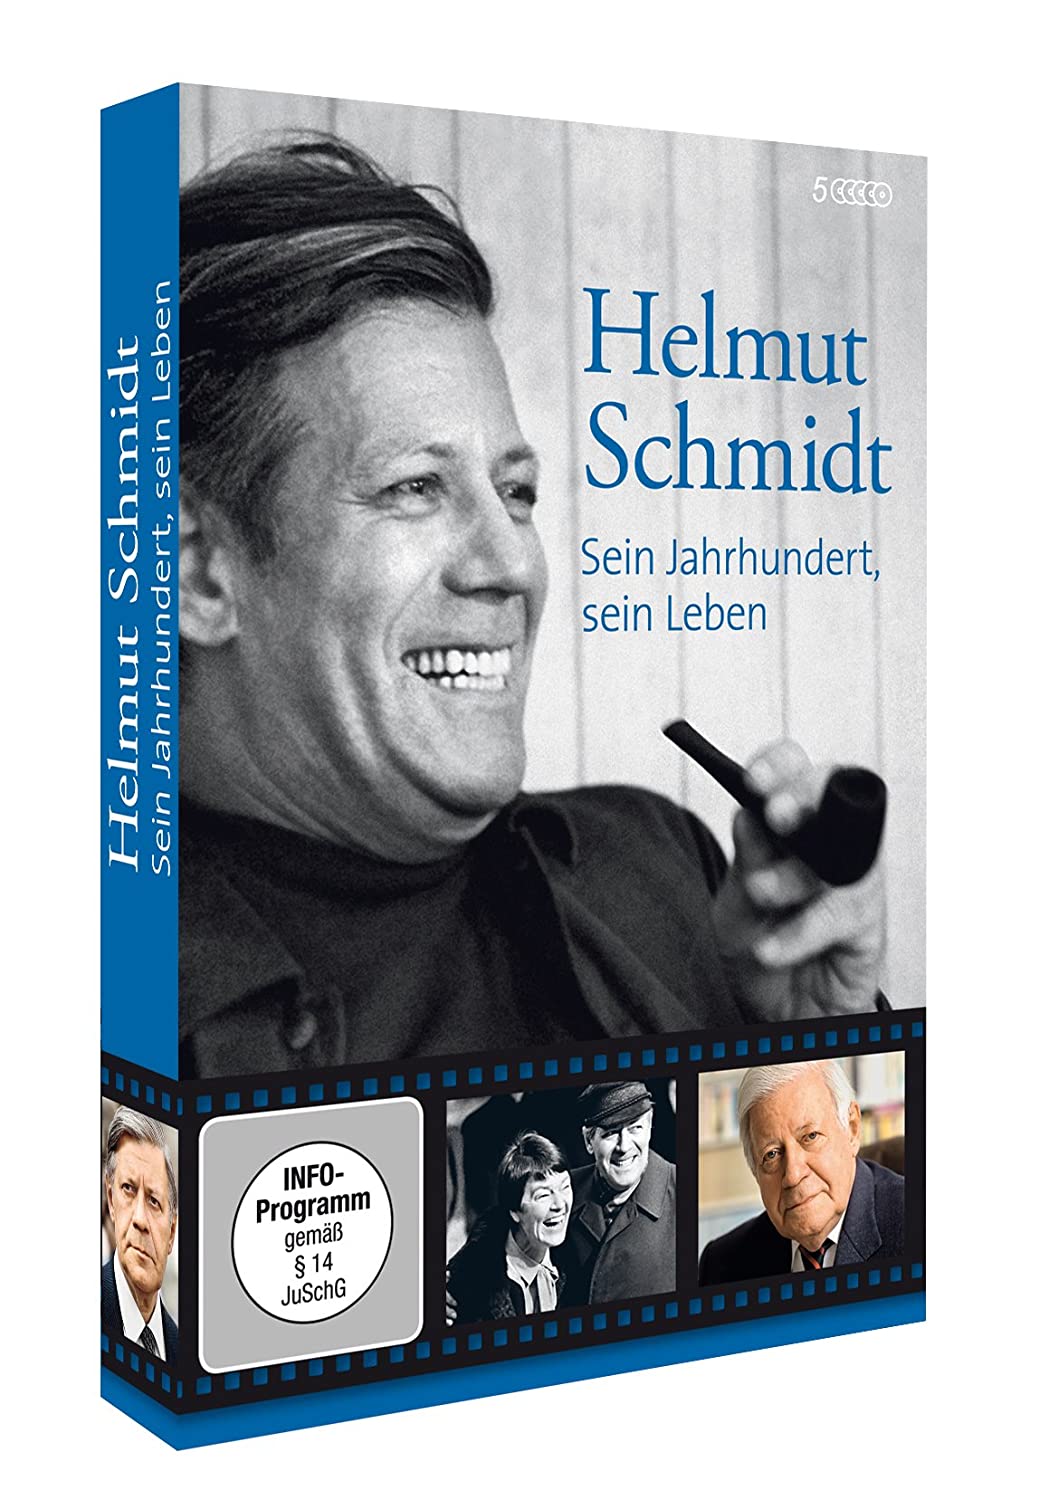 Helmut Schmidt - Sein Jahrhundert, sein Leben (5 DVD)